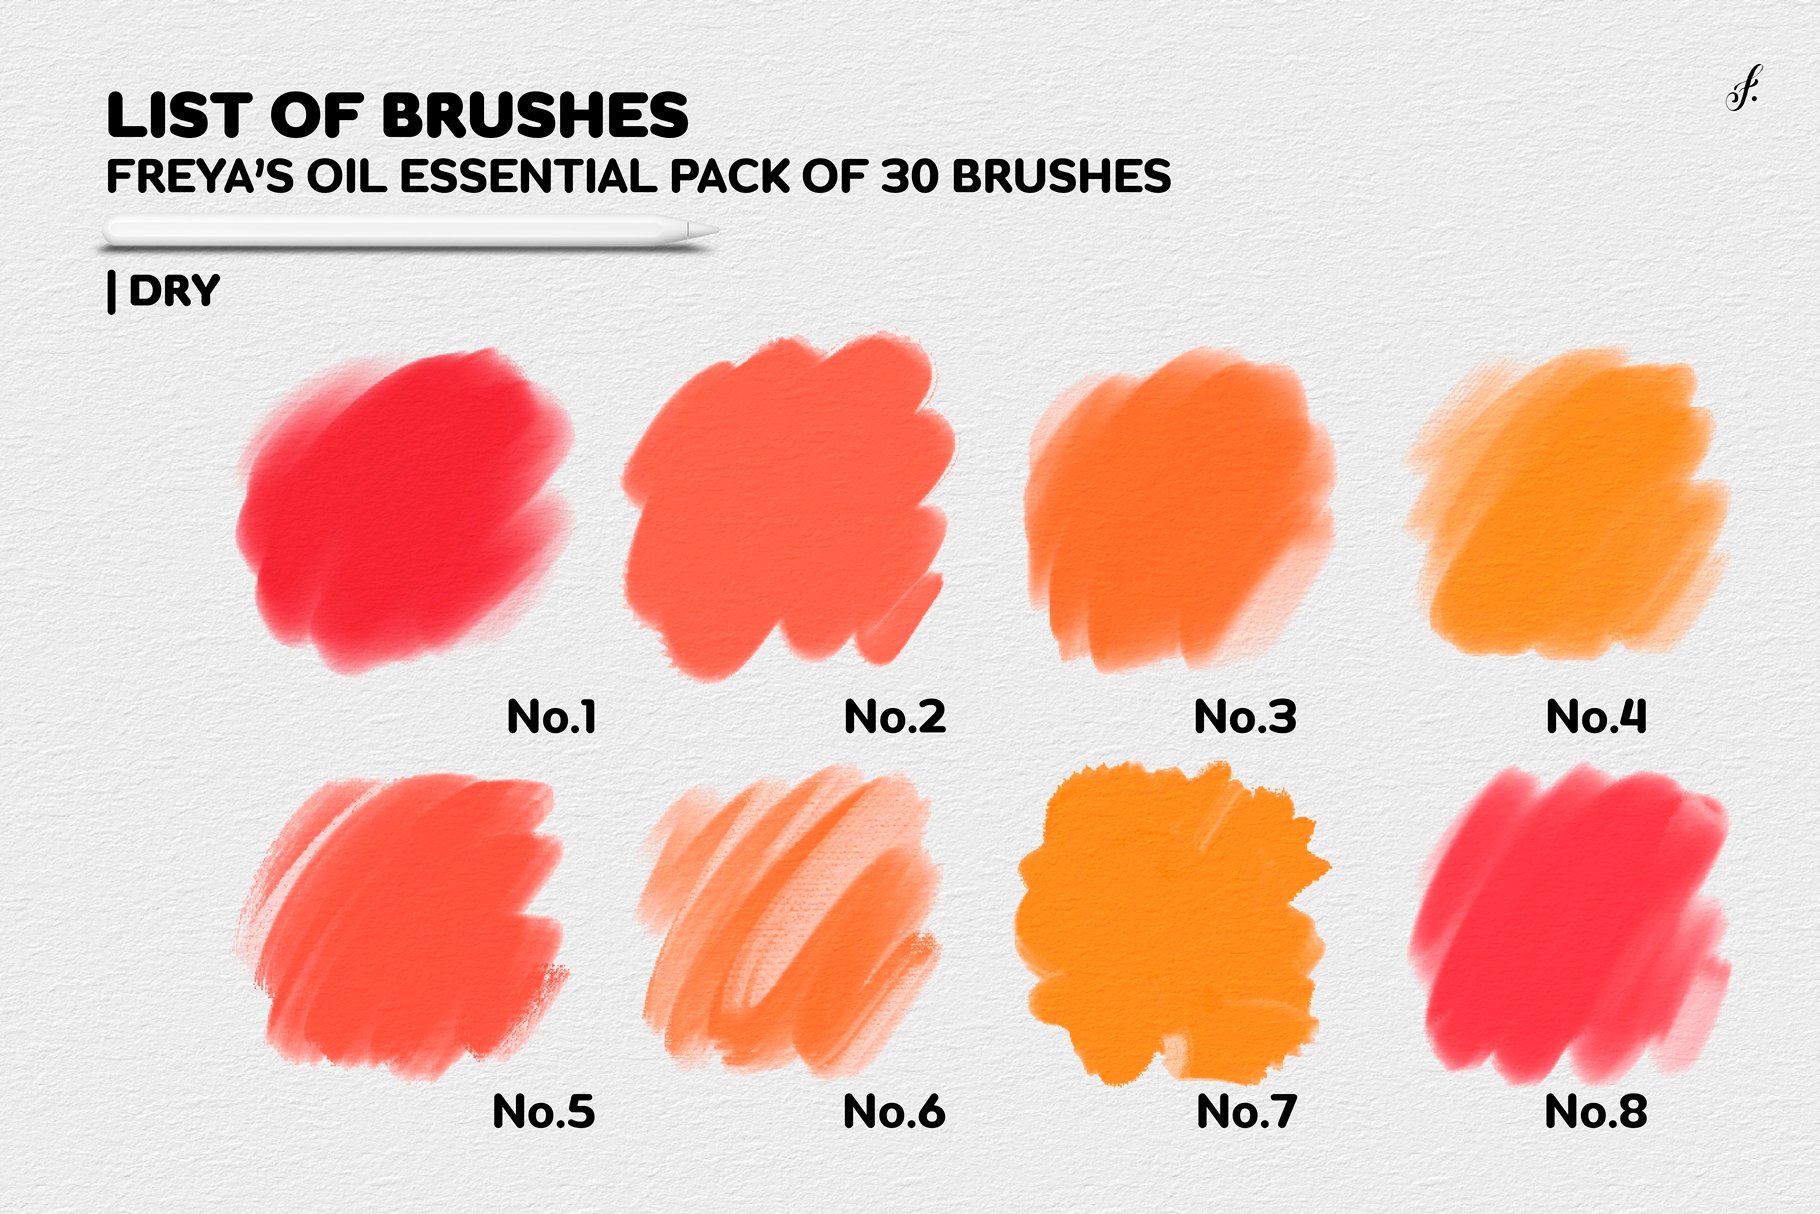 10 Essential Procreate Glue Brushes: A Guide